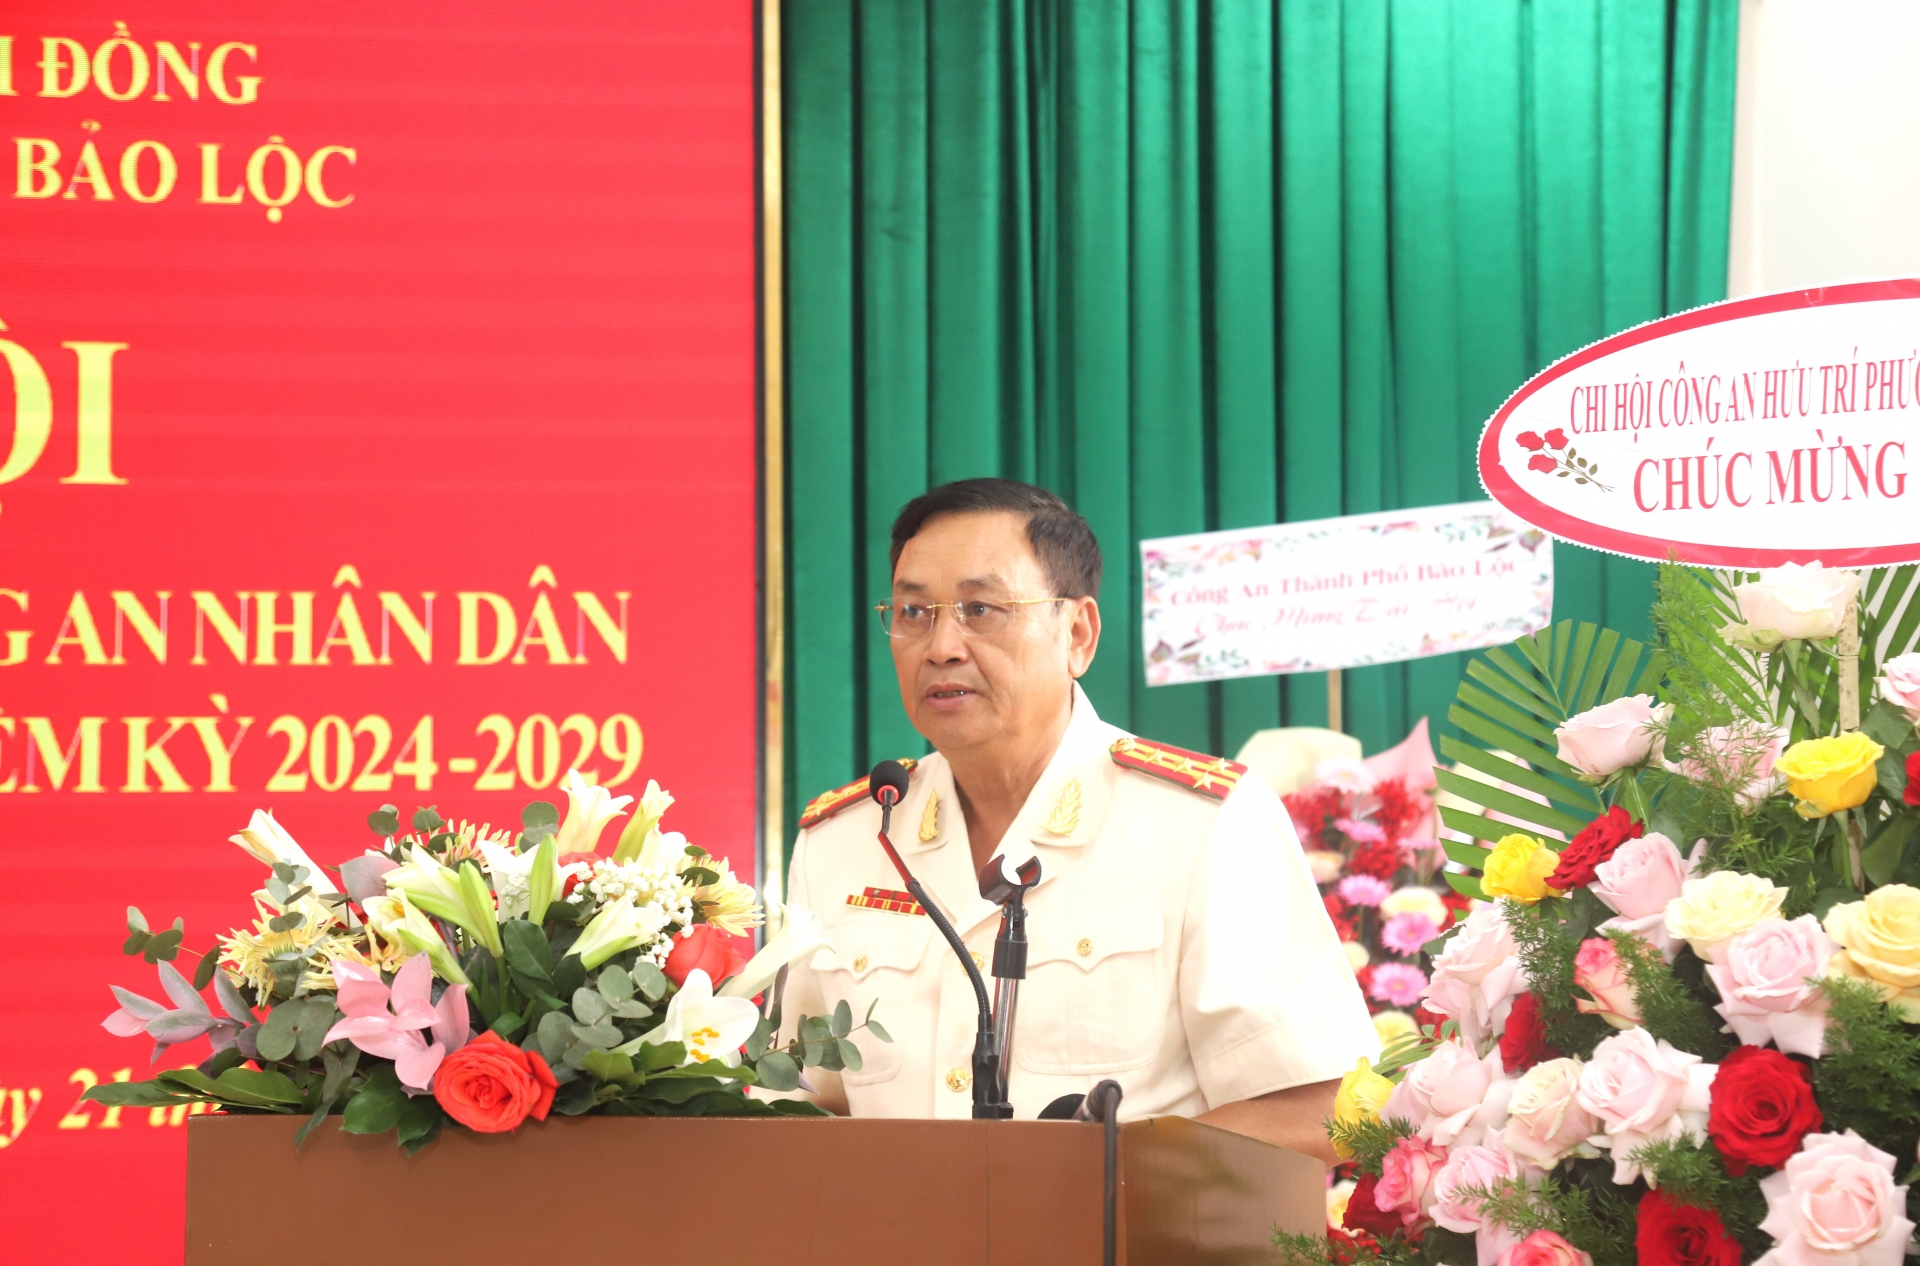 Đại tá Đào Ngọc Cần - Phó Chủ tịch Hội Cựu Công an Nhân dân tỉnh Lâm Đồng phát biểu chỉ đạo tại Đại hội